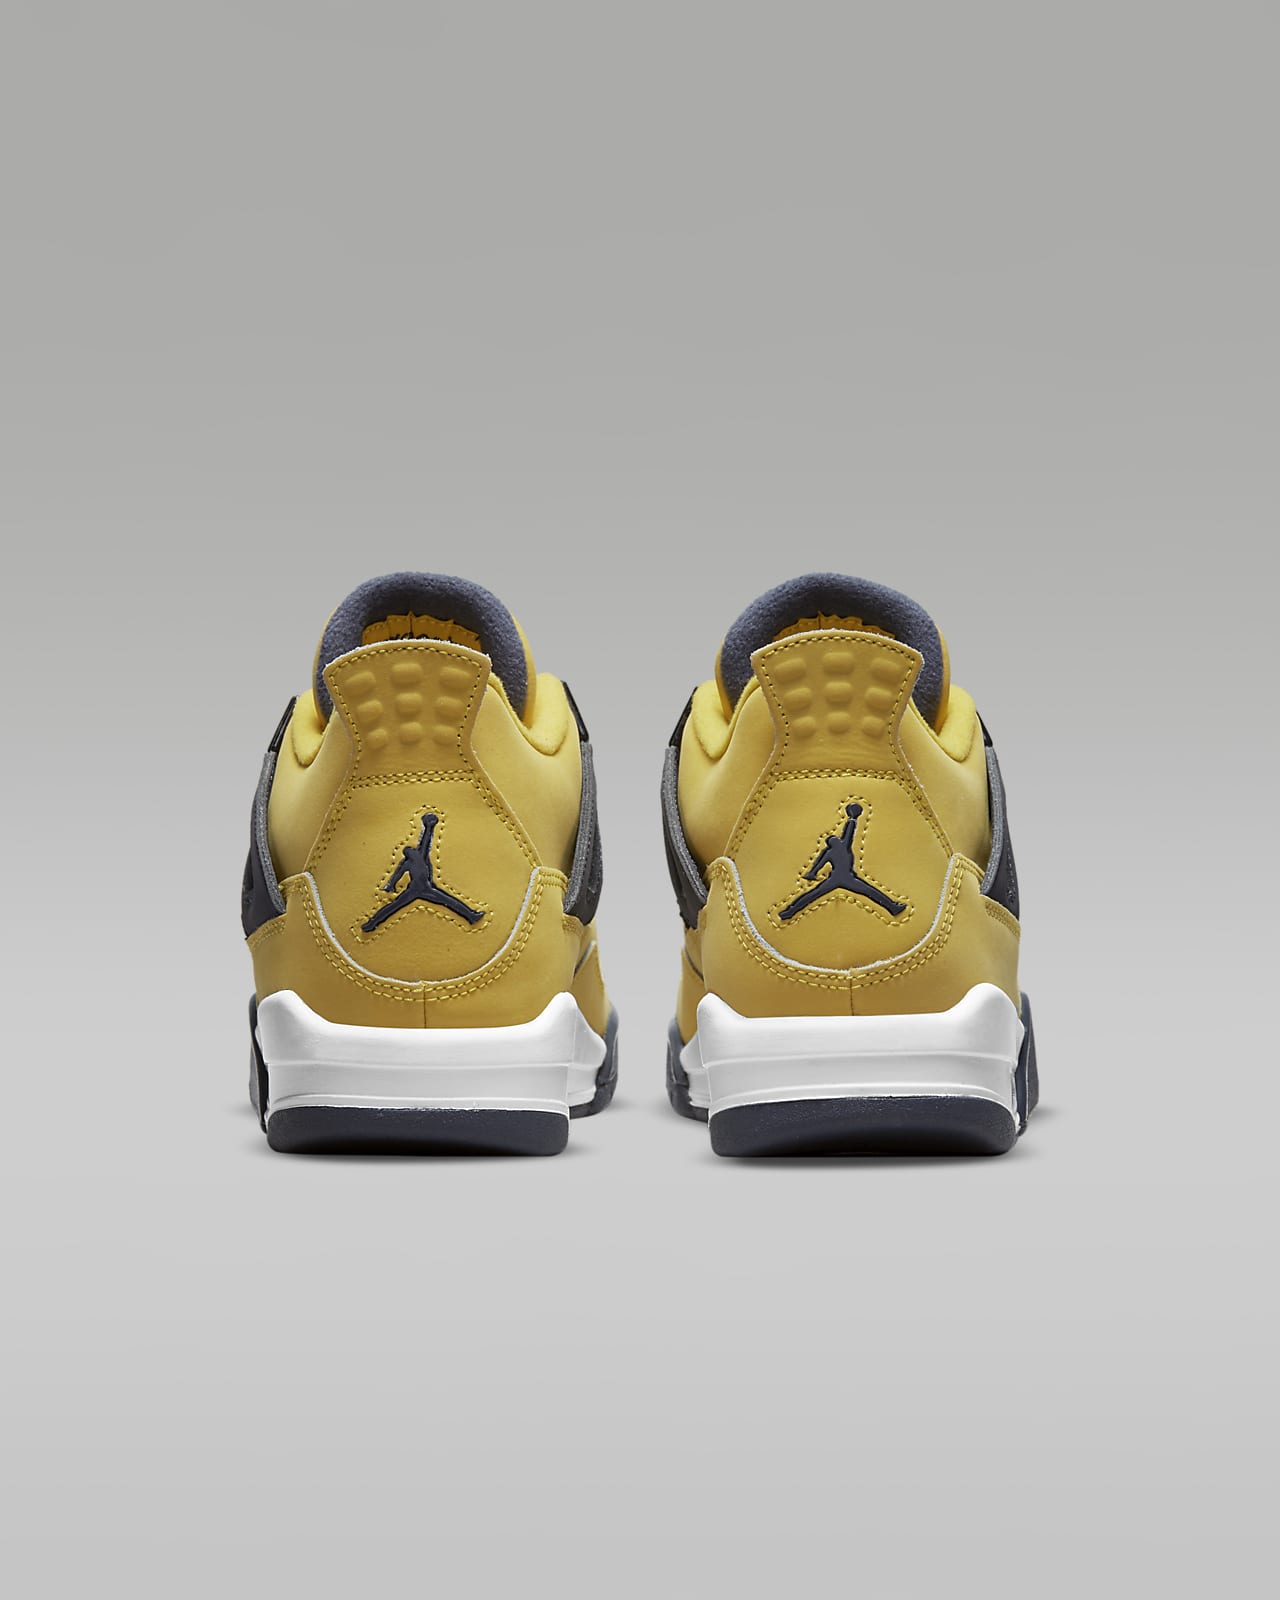 Air Jordan 4 Retro Big Kids' Shoes